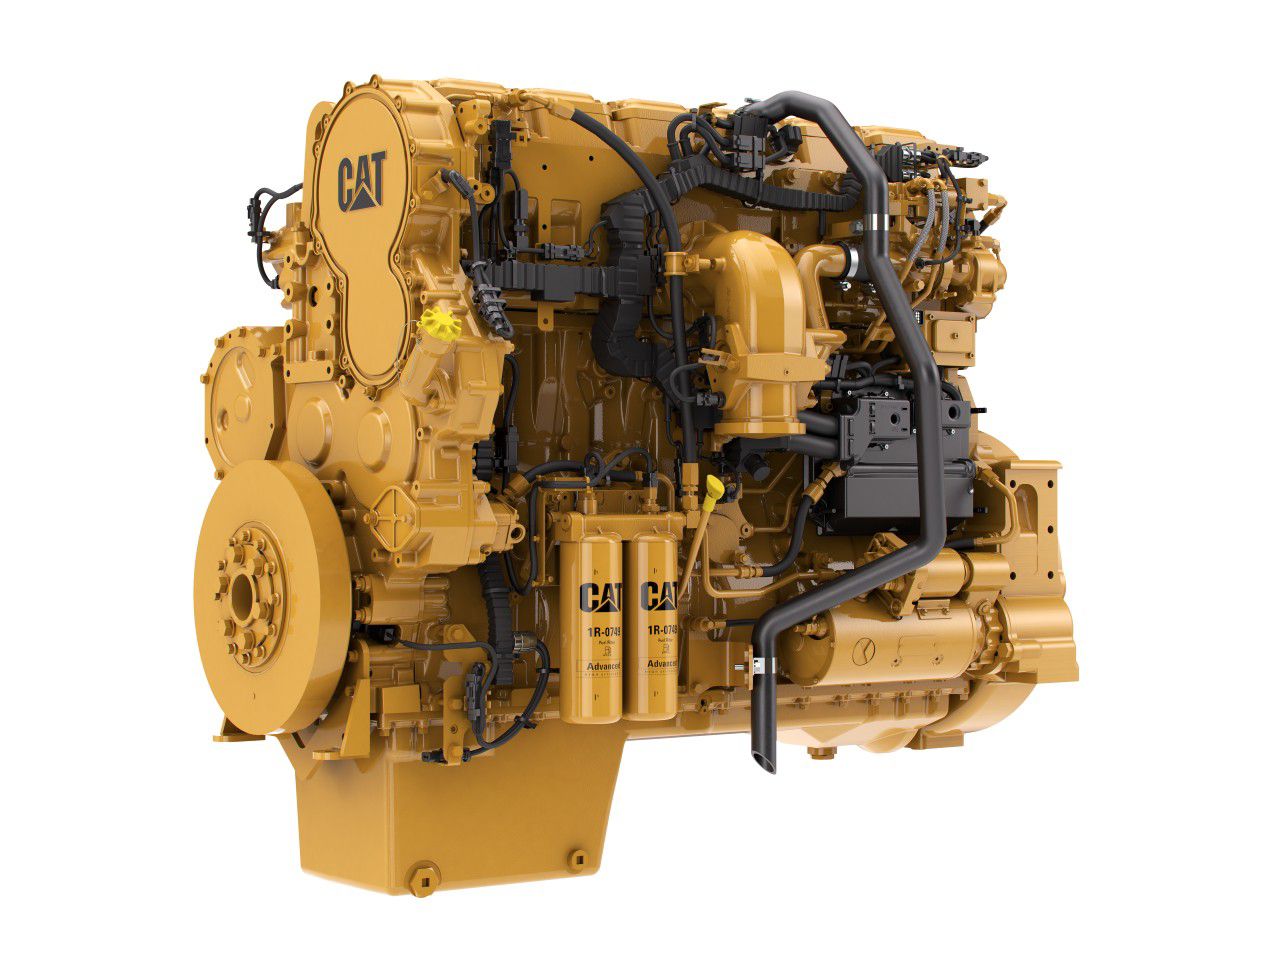 Двигатель сат. Двигатель Caterpillar c15. Caterpillar engine c15. Мотор Катерпиллер с 15. Caterpillar c15 acert.